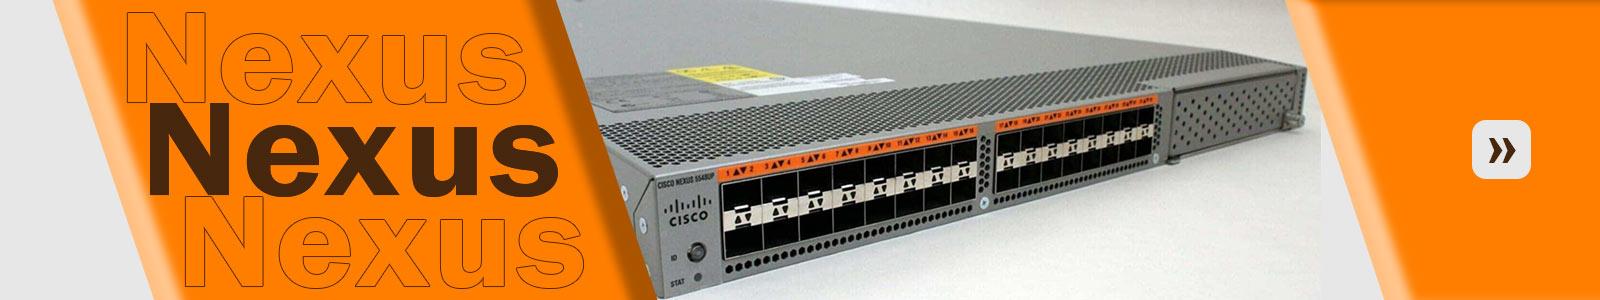 سوئیچ Cisco nexus